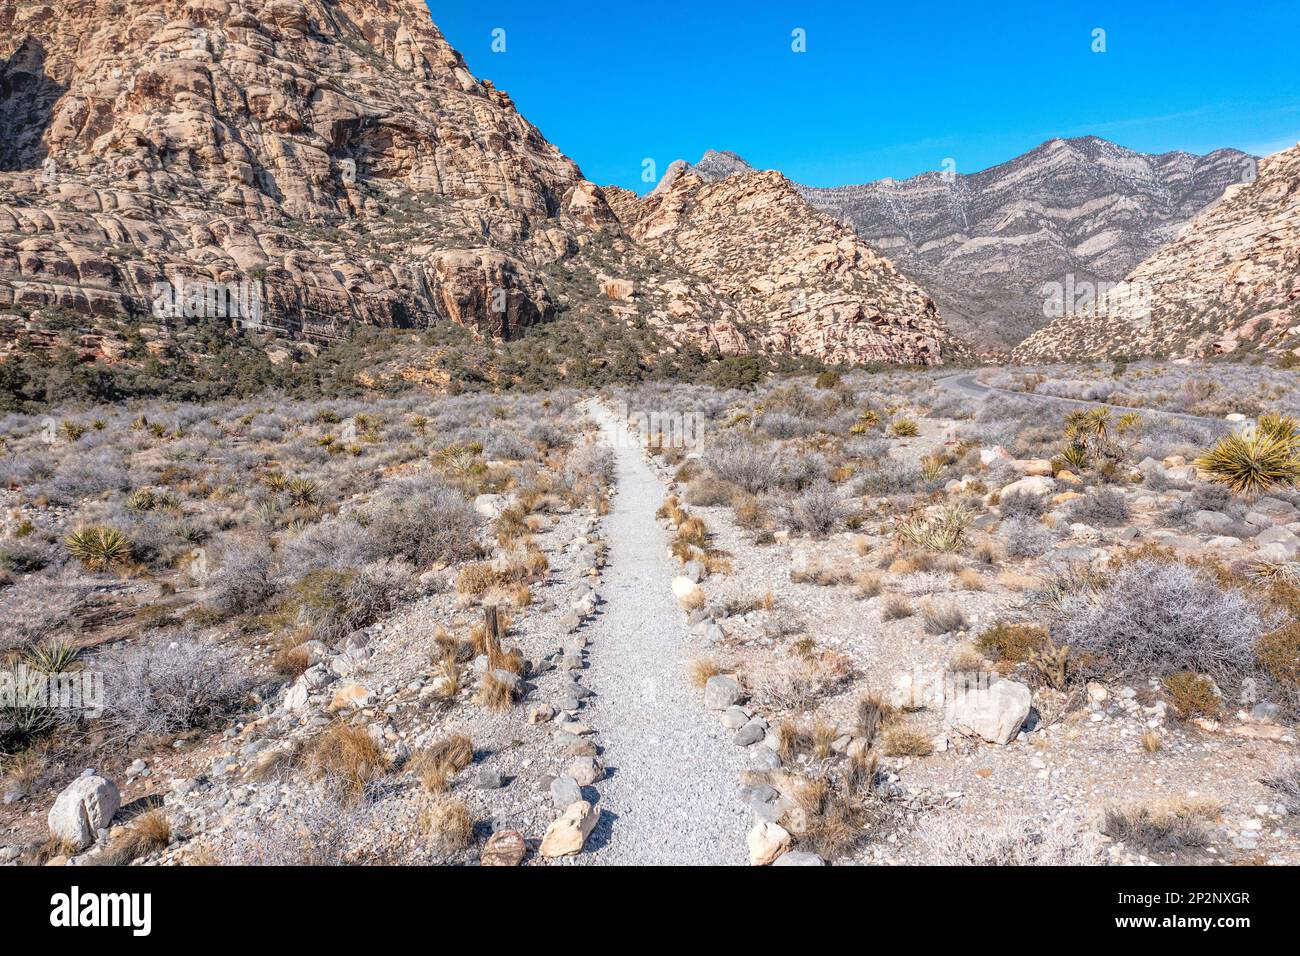 Wanderwege gibt es im gesamten Red Rock Canyon in Las Vegas, die Abenteurern Zugang in die abgelegene Wildnis des Naturschutzgebiets bieten. Stockfoto